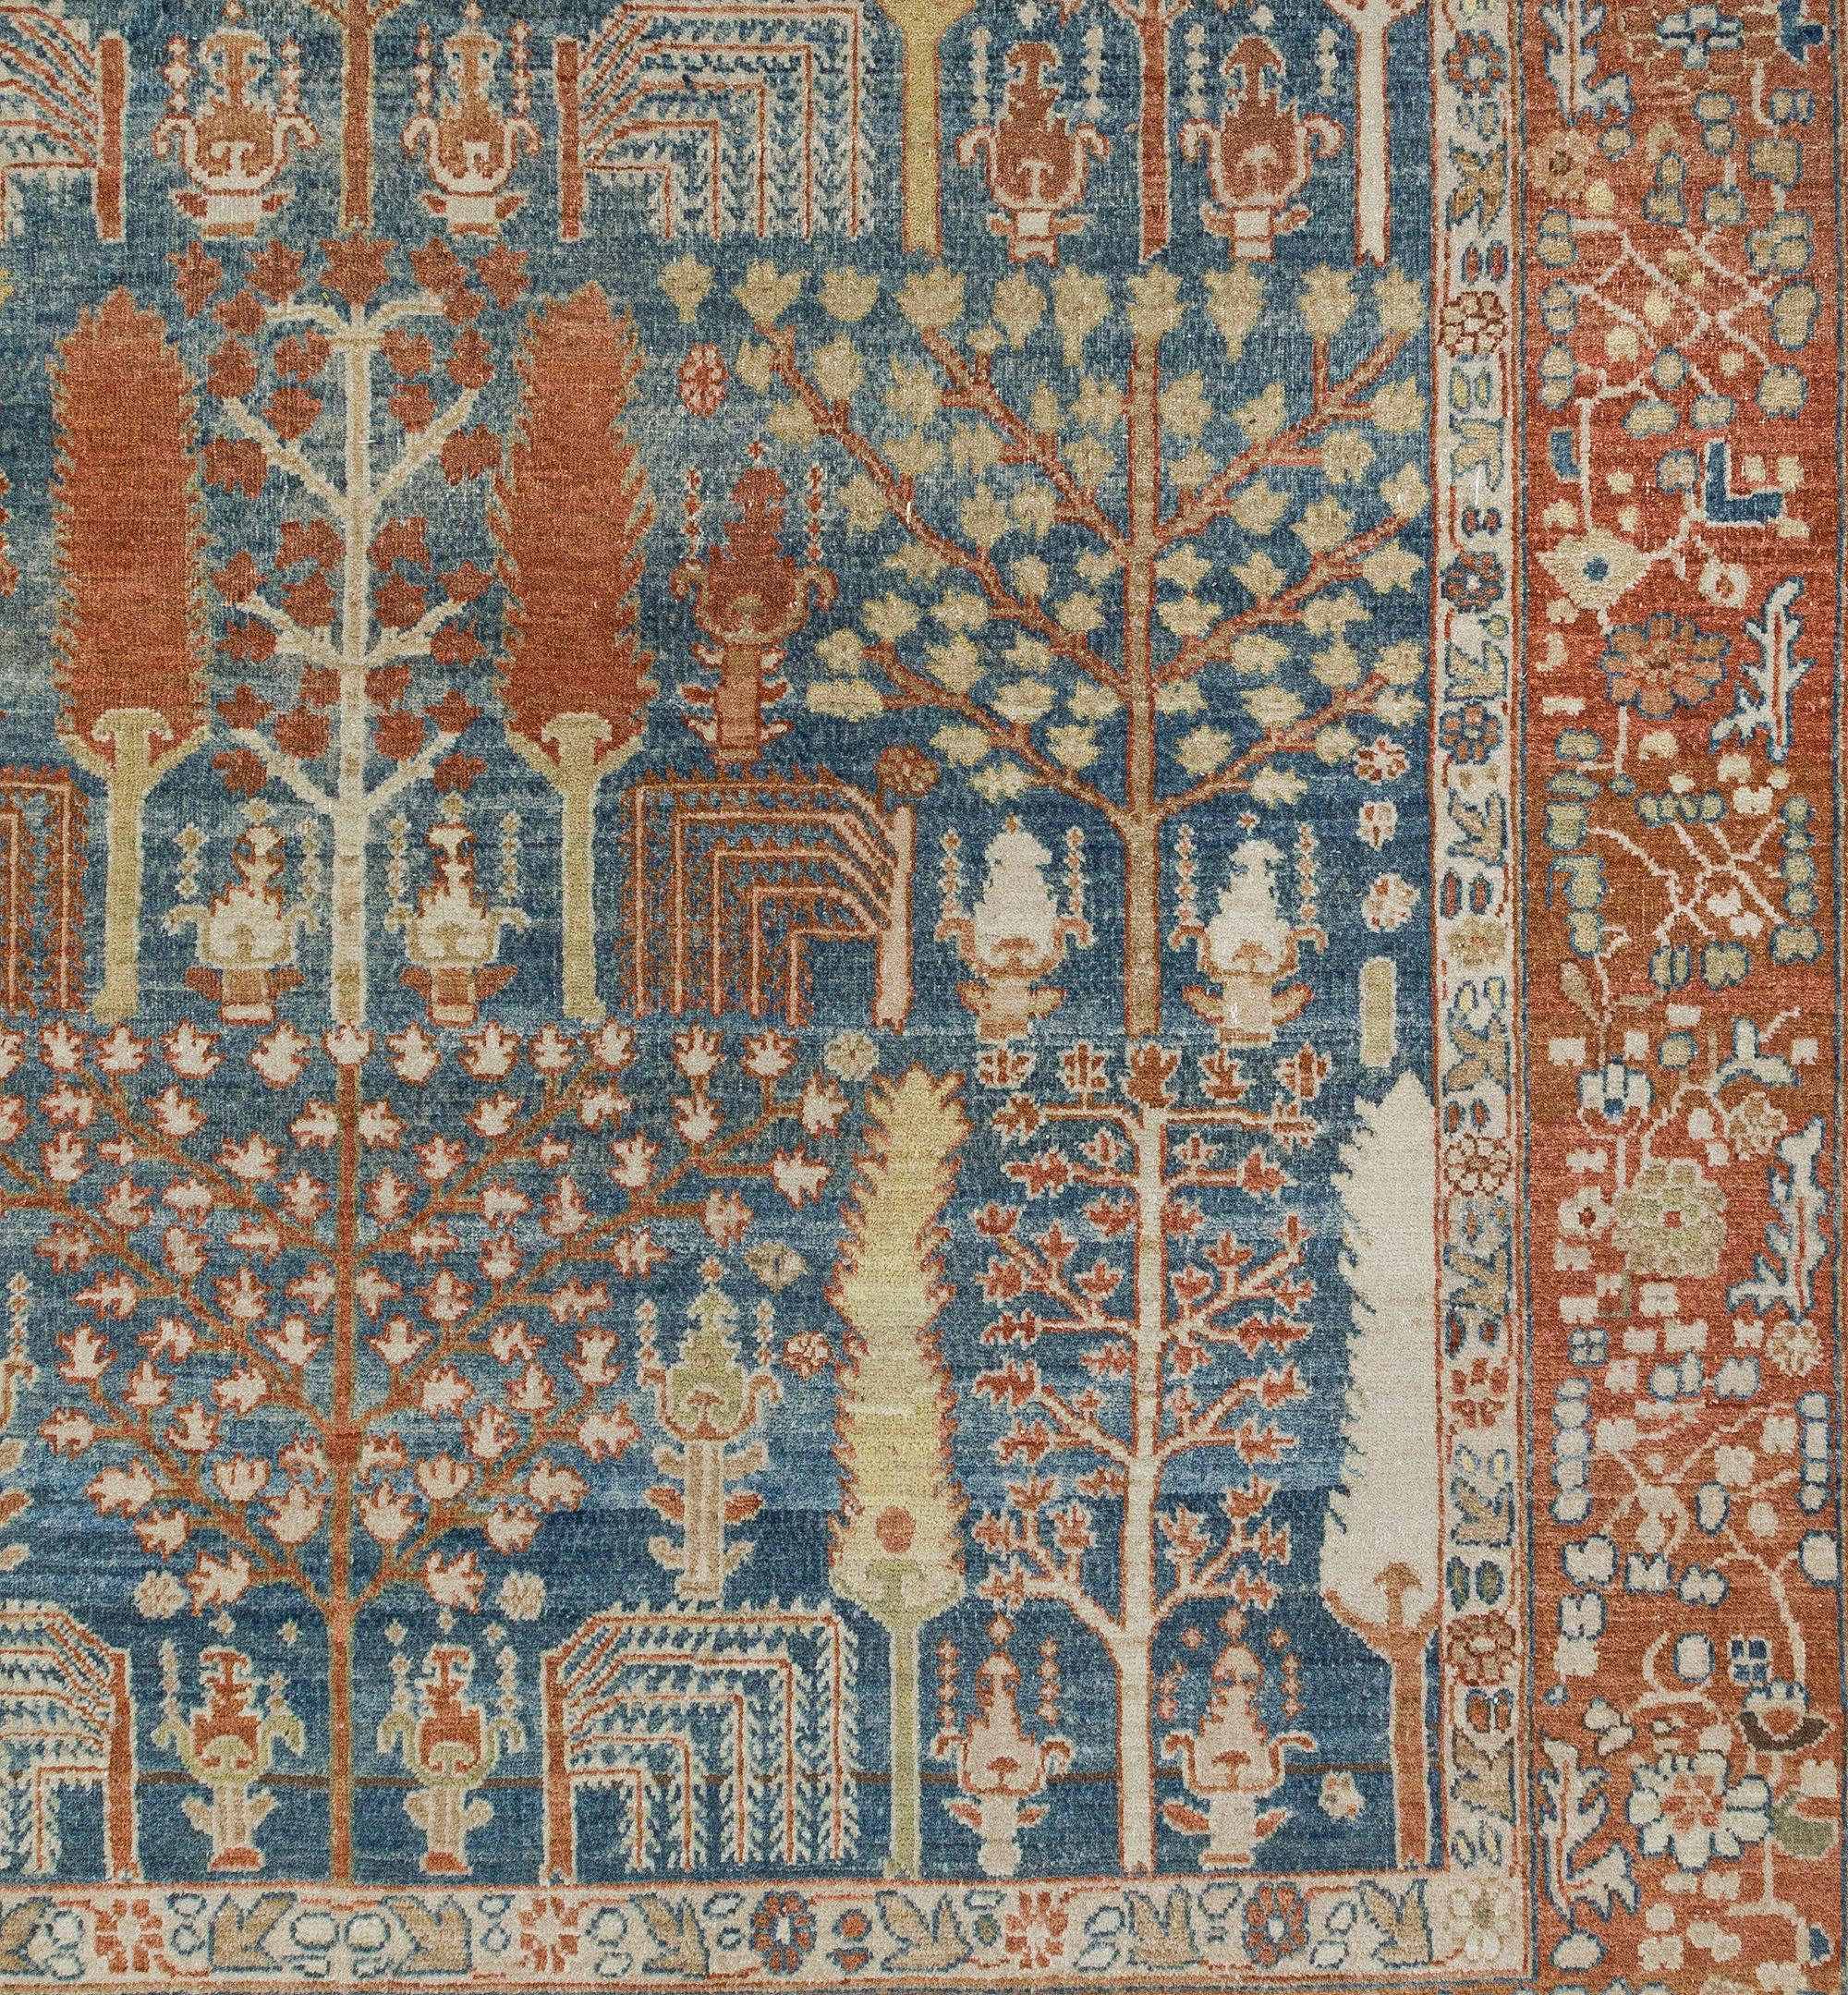 Ce tapis ressemble aux rares et anciens tapis Bakshaish de collection qui ont été produits au 19e siècle et avant.  En raison de leur disponibilité limitée, Nasiri a fait revivre les anciennes techniques de teinture et de tissage qui se sont